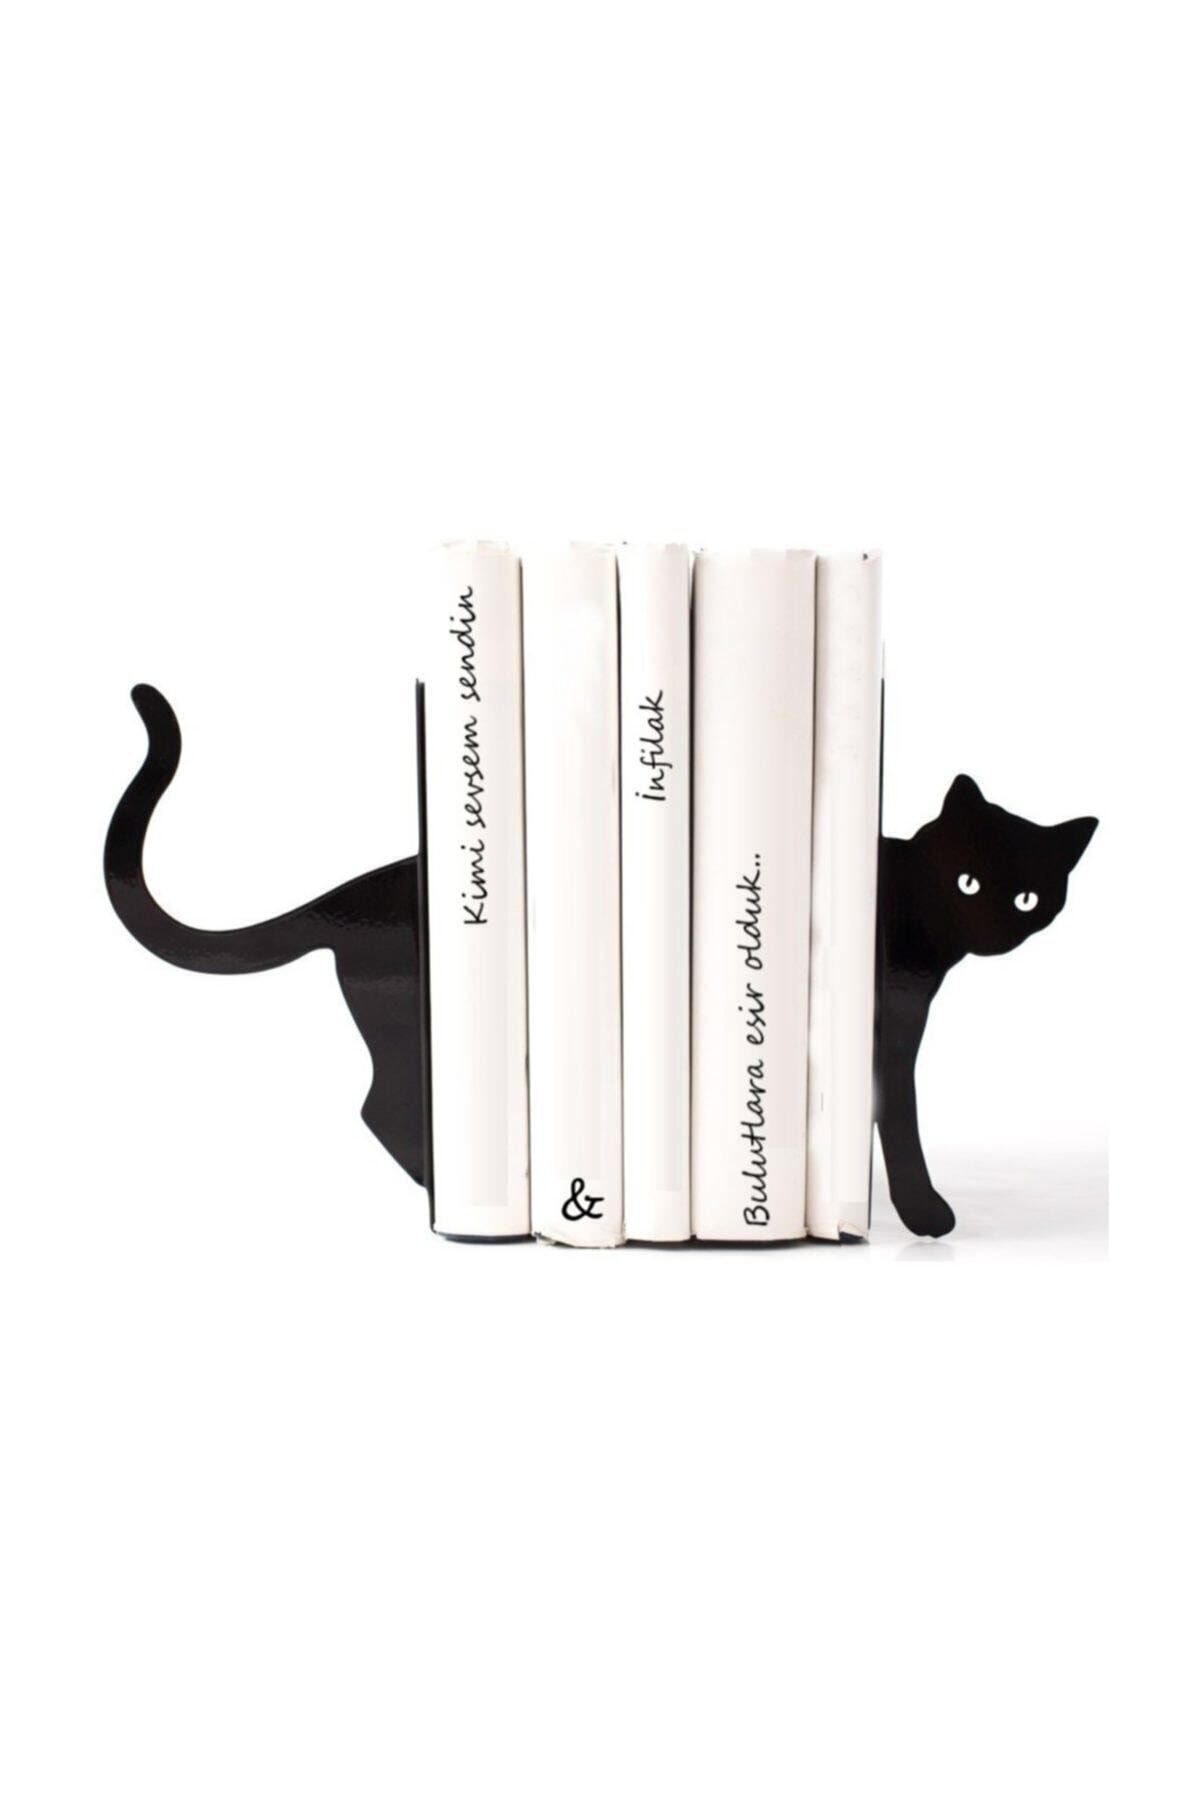 Simge Yapı Dekorasyon Kara Kedi Figürlü Dekoratif Metal Kitap Tutucu, Kitap Desteği